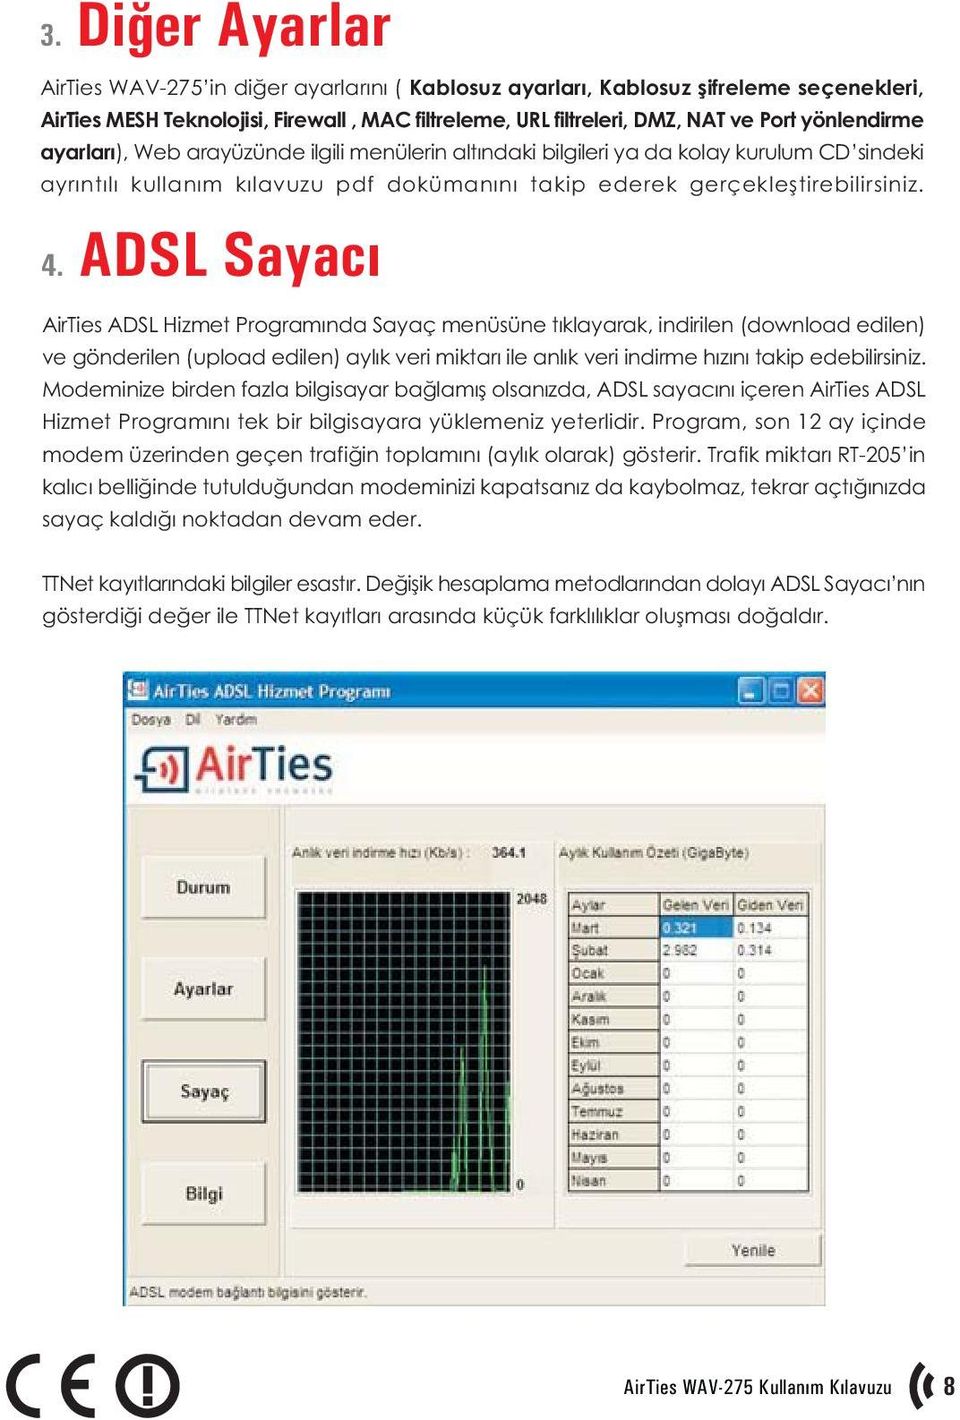 ADSL Sayacý AirTies ADSL Hizmet Programýnda Sayaç menüsüne týklayarak, indirilen (download edilen) ve gönderilen (upload edilen) aylýk veri miktarý ile anlýk veri indirme hýzýný takip edebilirsiniz.